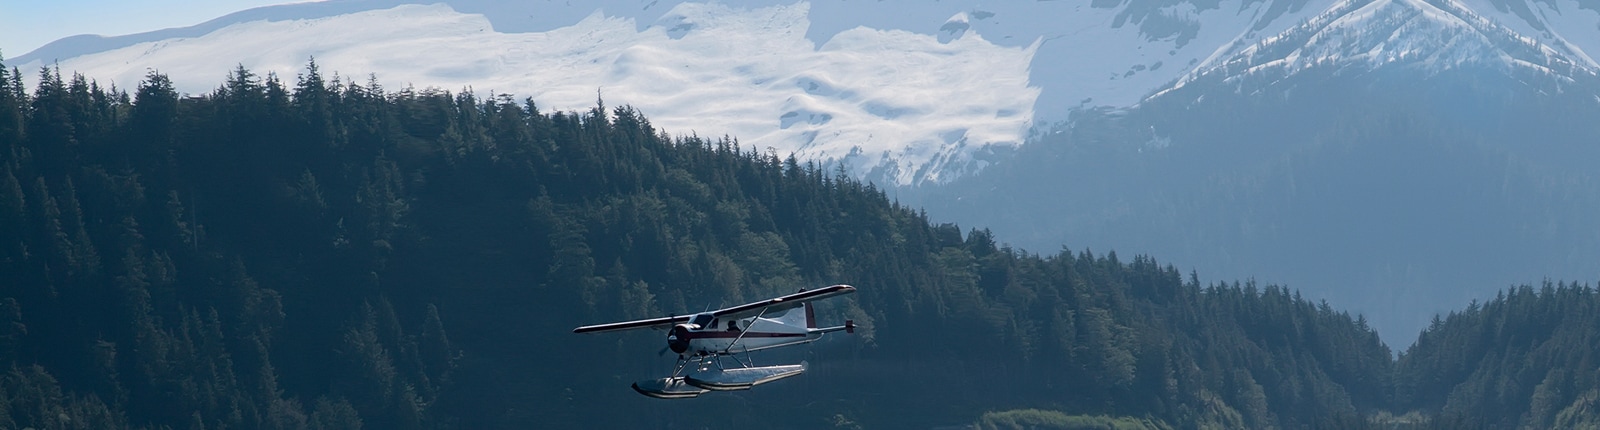 Scenic plane ride in Ketchikan Alaska